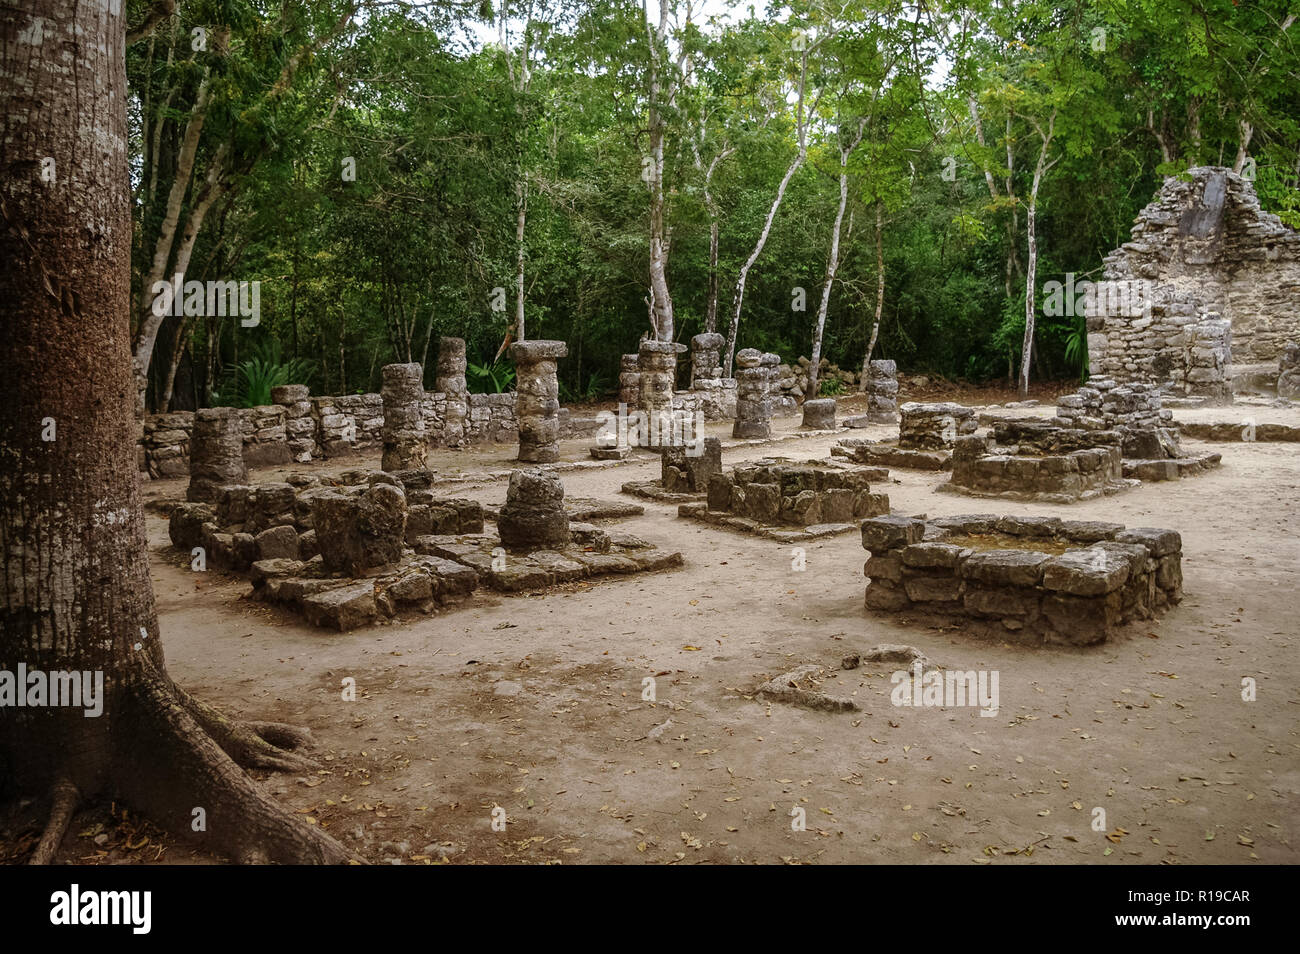 Ruins of mayan Pyramid in Coba. Mexico. Stock Photo